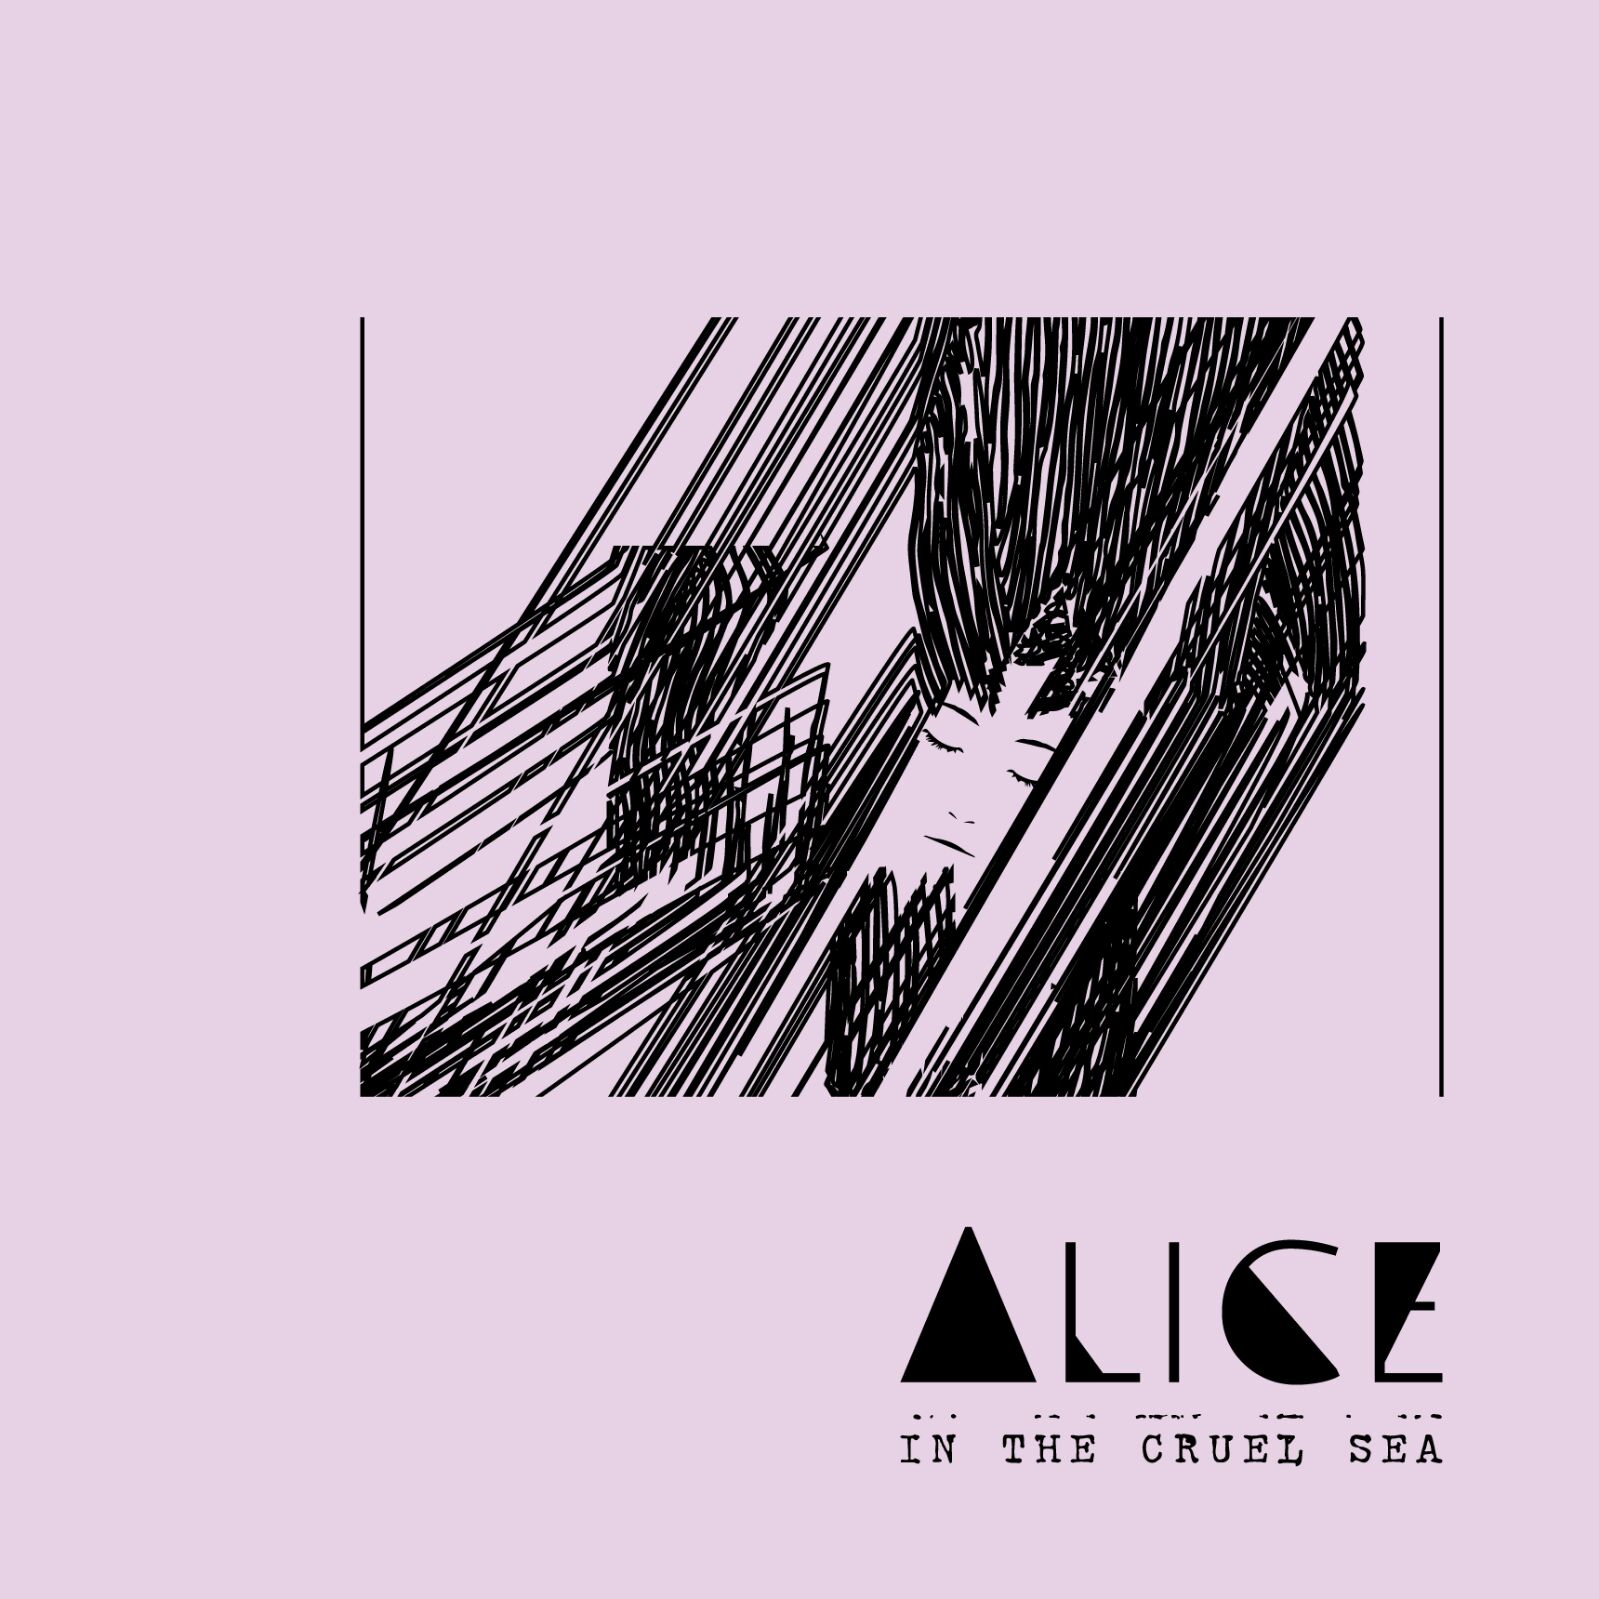 Alice in the Cruel Sea